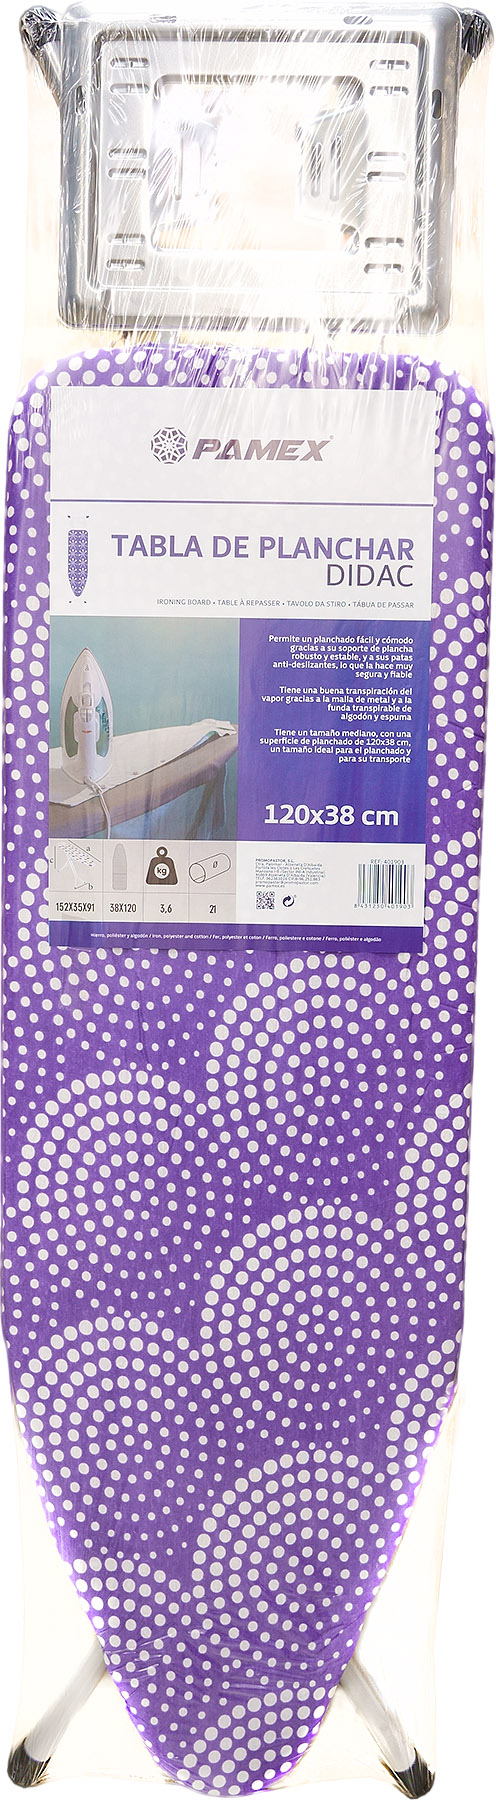 TABLA DE PLANCHAR DIDAC 120X38 CM – Productos para la limpieza del hogar